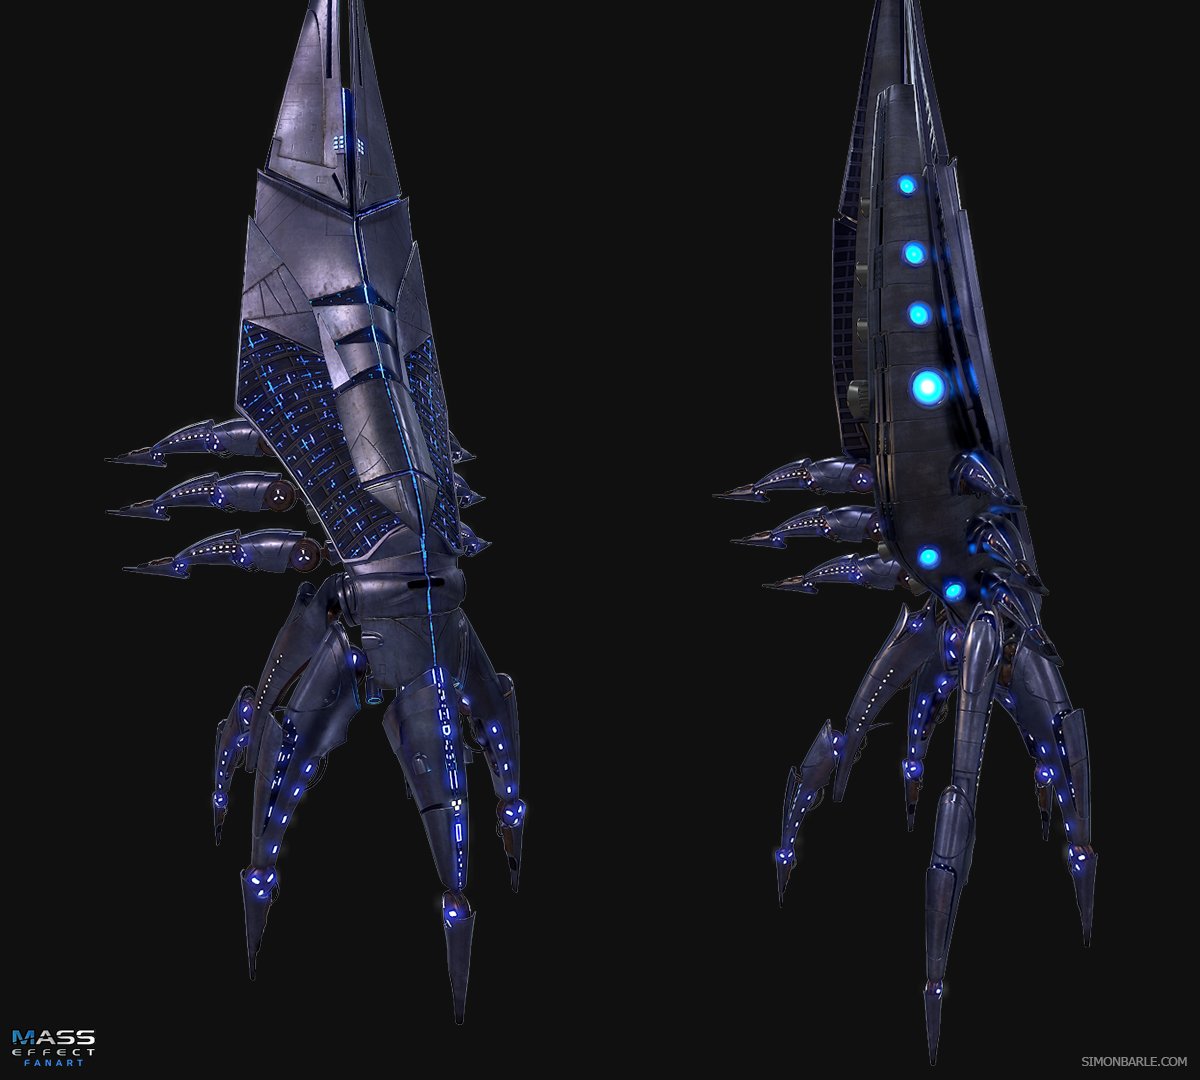 Simon Barle - Mass Effect Reaper Fan Art